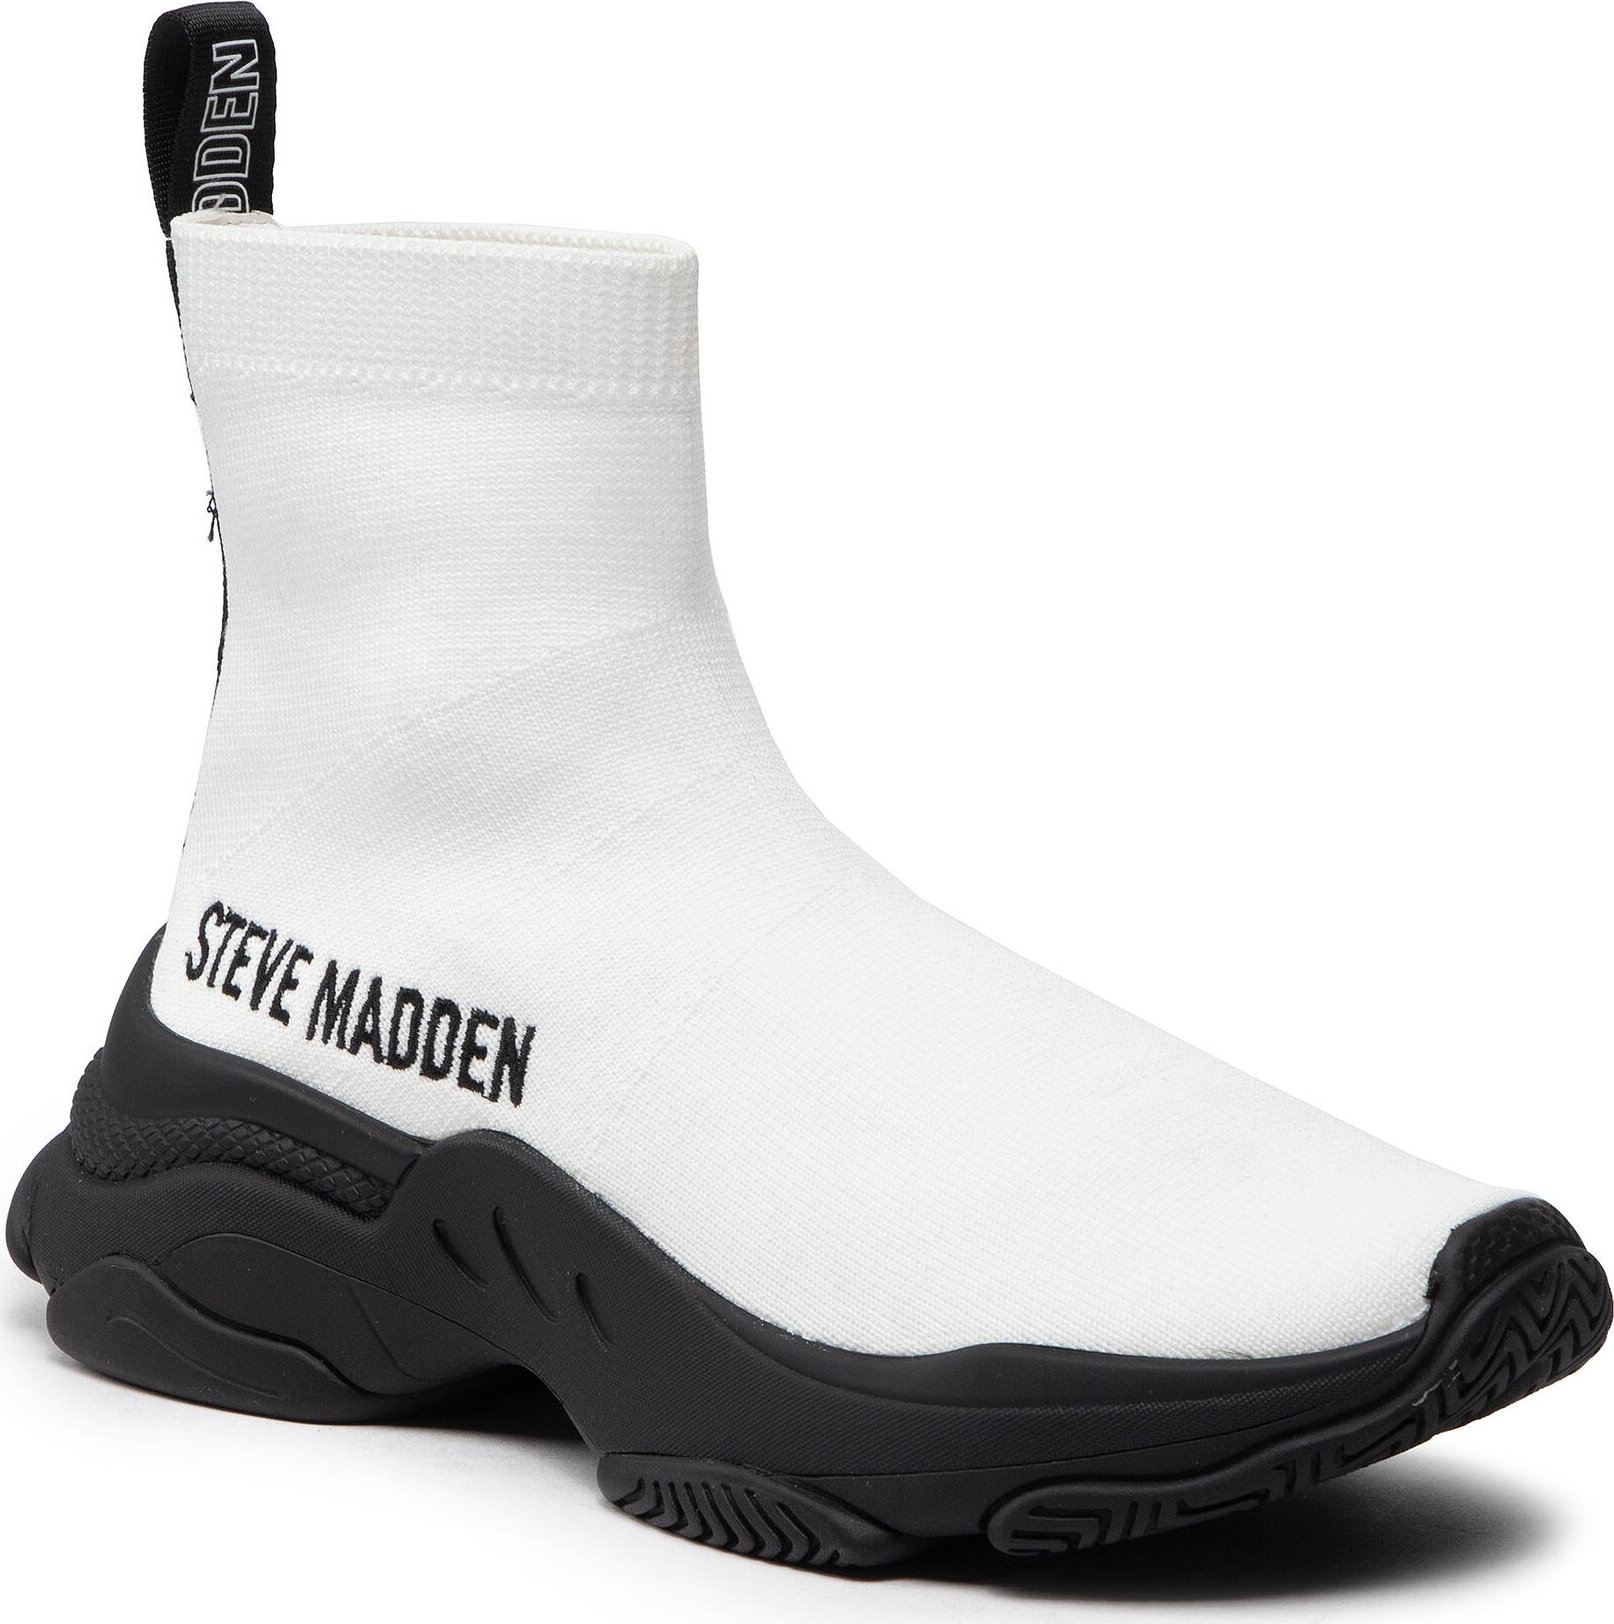 Sneakersy Steve Madden Master SM11001442-04004-148 White/Black